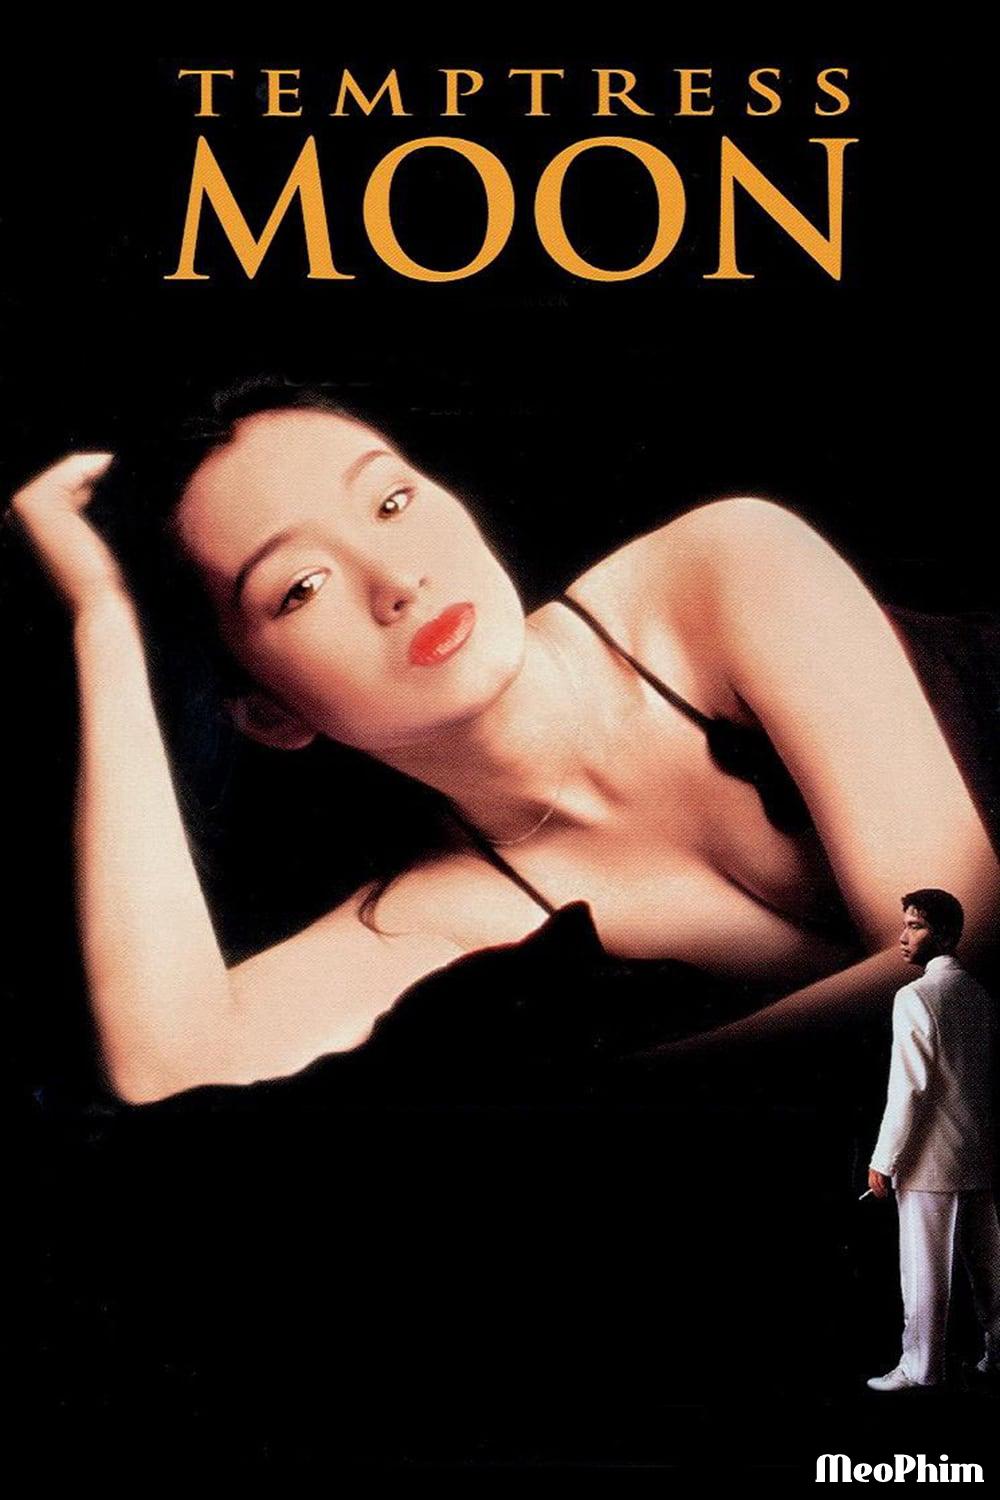 Phong Nguyệt - Temptress Moon (1996)